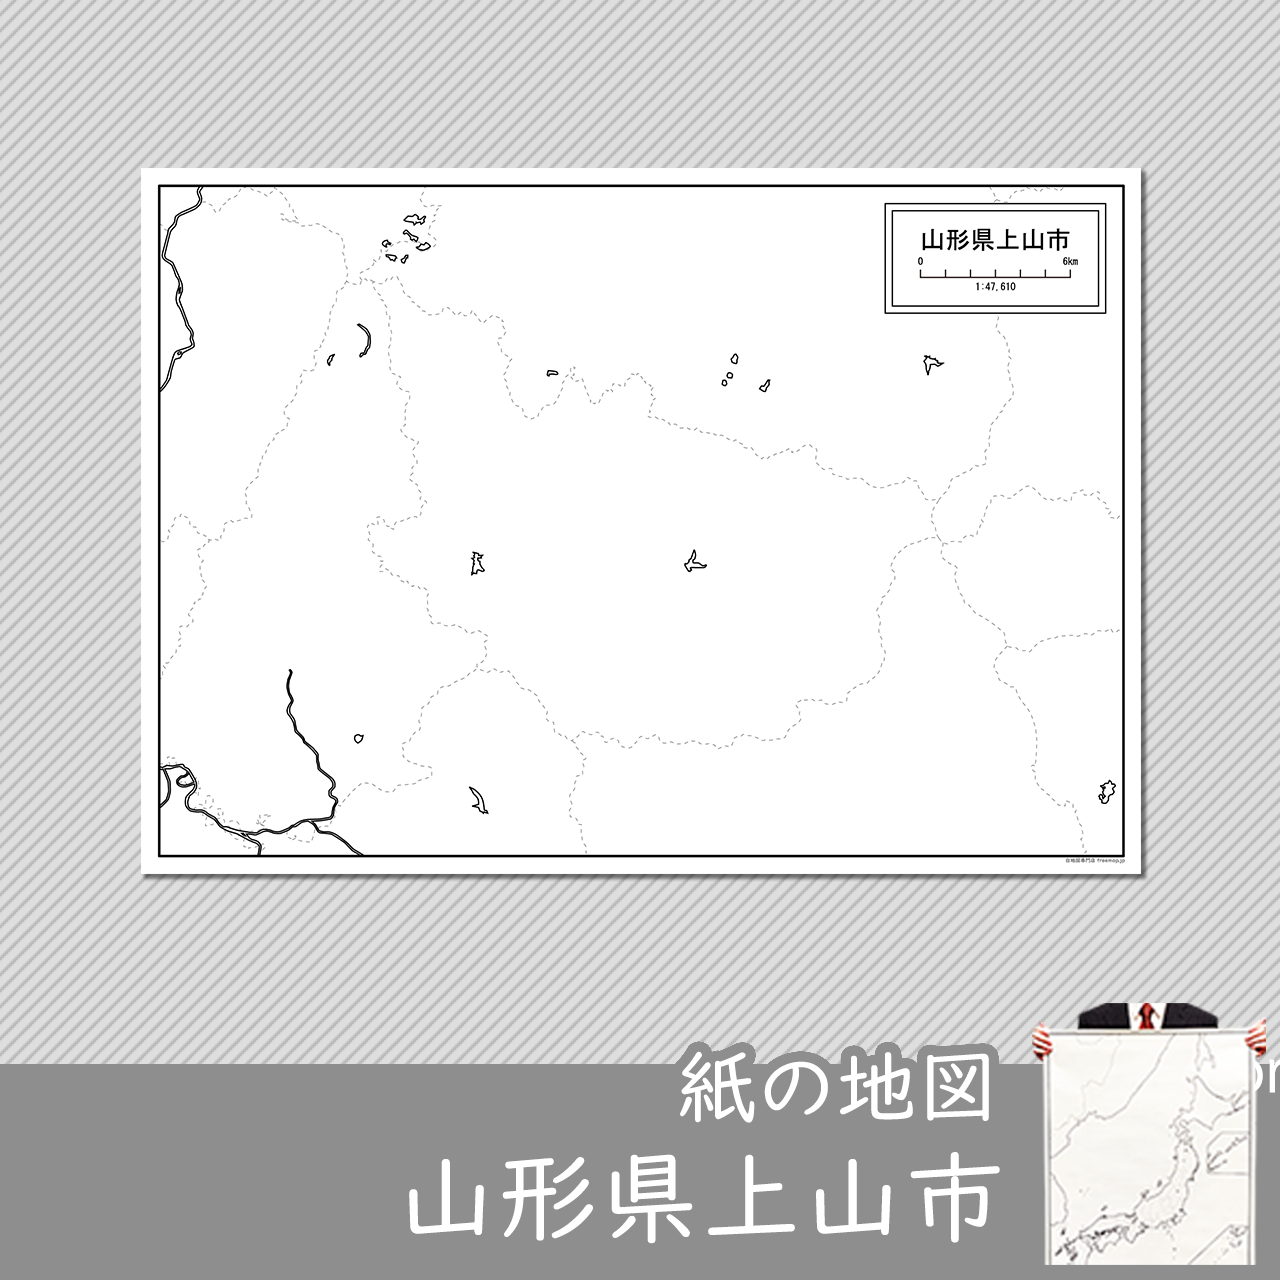 上山市の紙の白地図のサムネイル